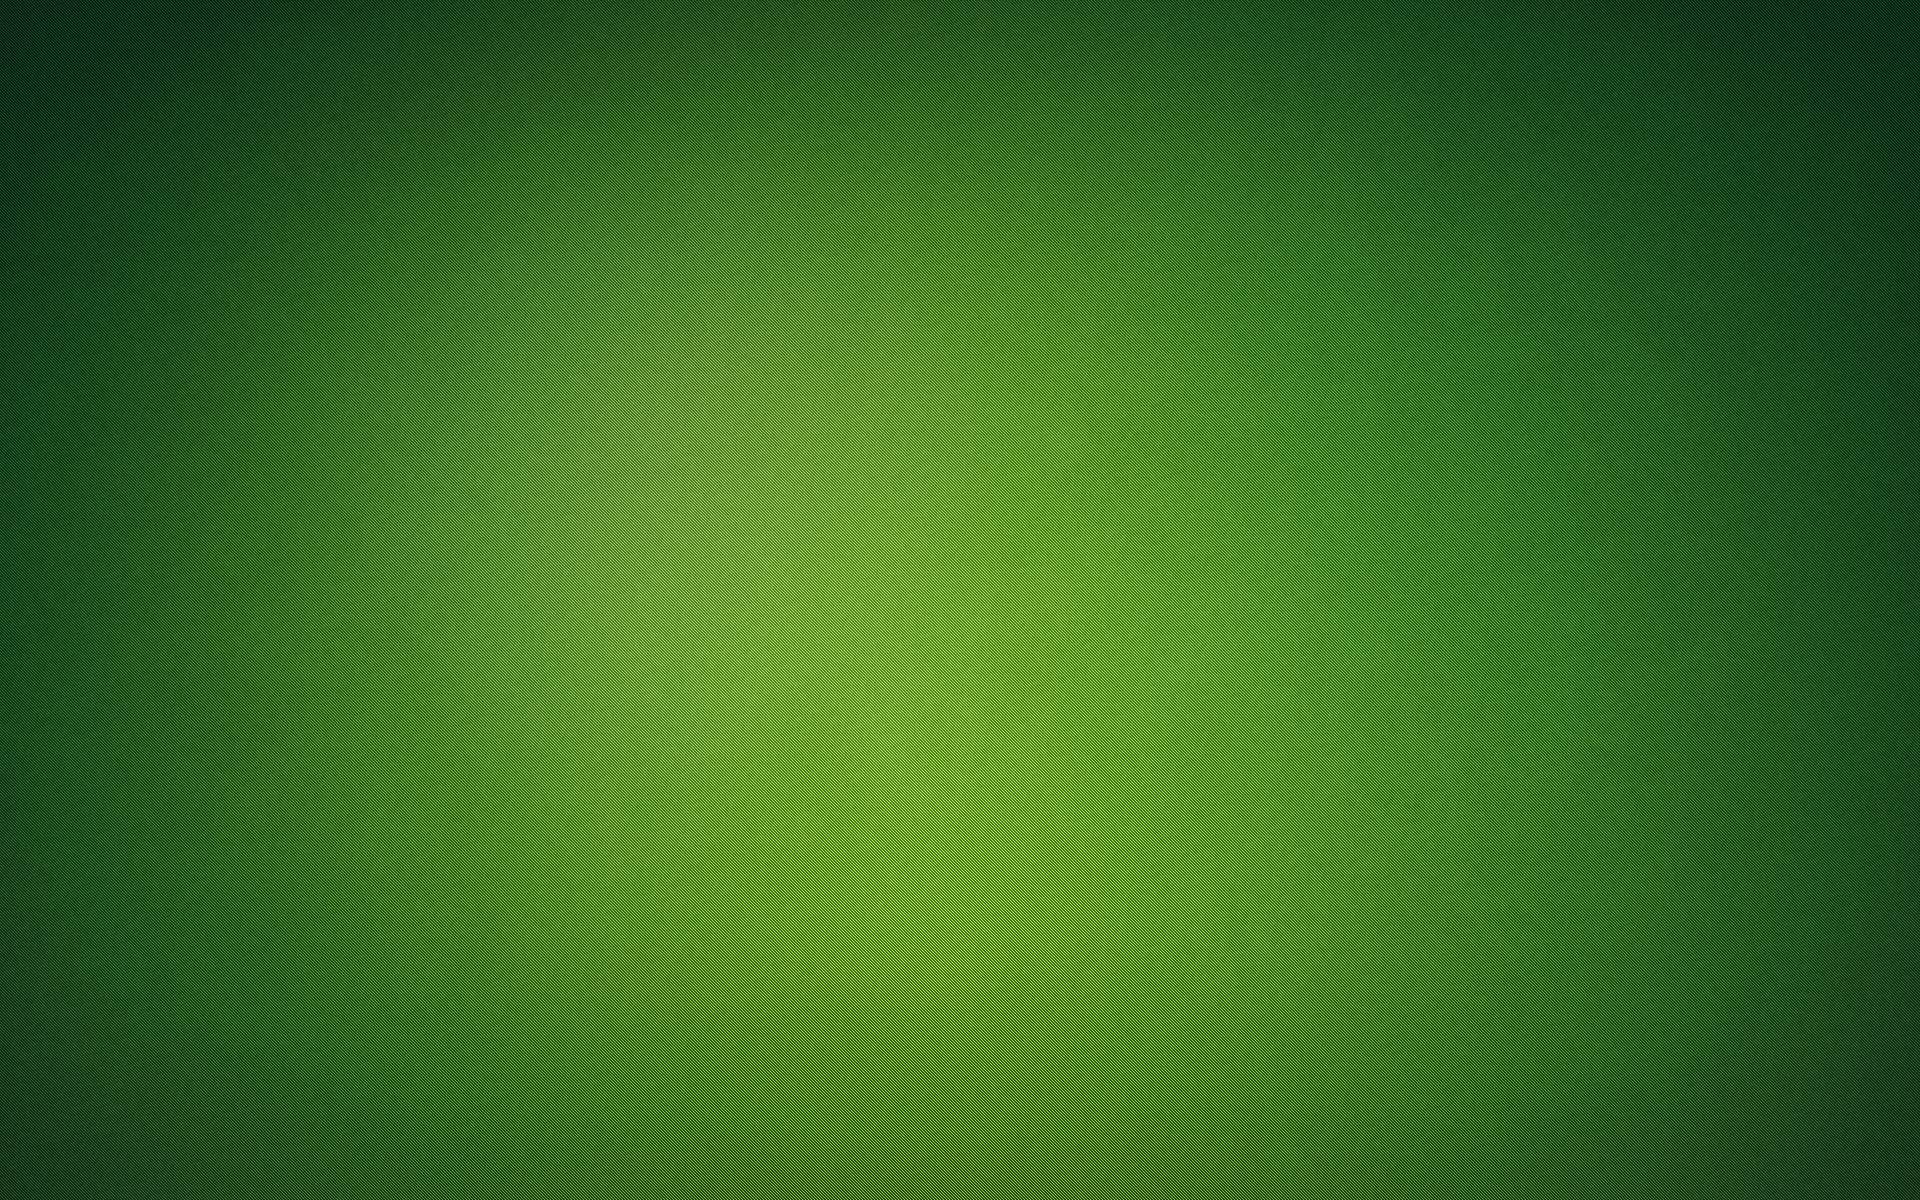 全屏纯绿壁纸图片